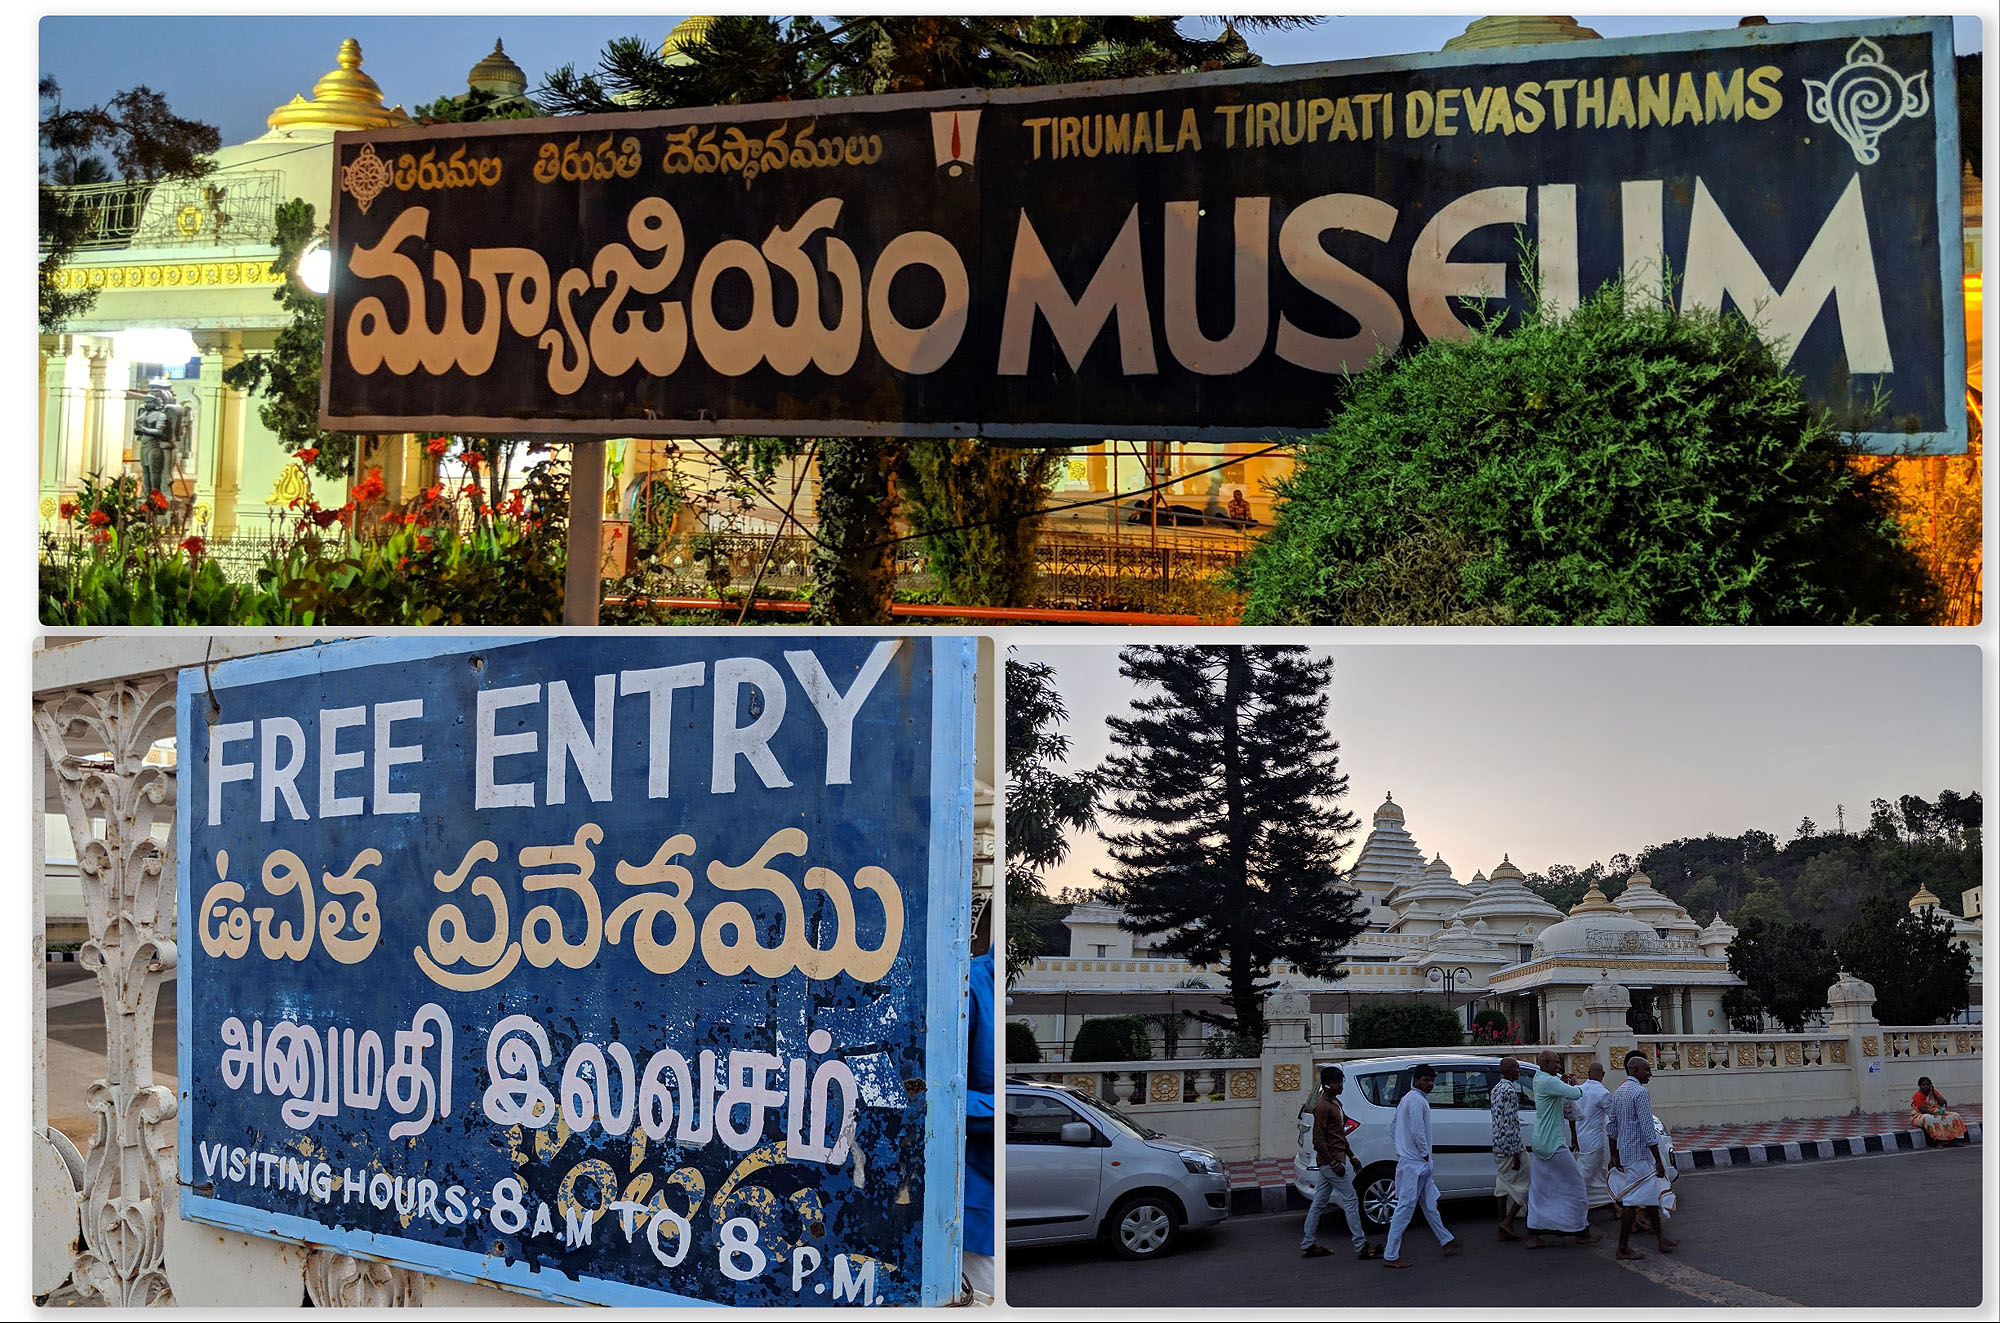 Sri Venkateswara Museum, Tirumala (திருமலை திருப்பதி தேவஸ்தானம் அருங்காட்சியகம்)